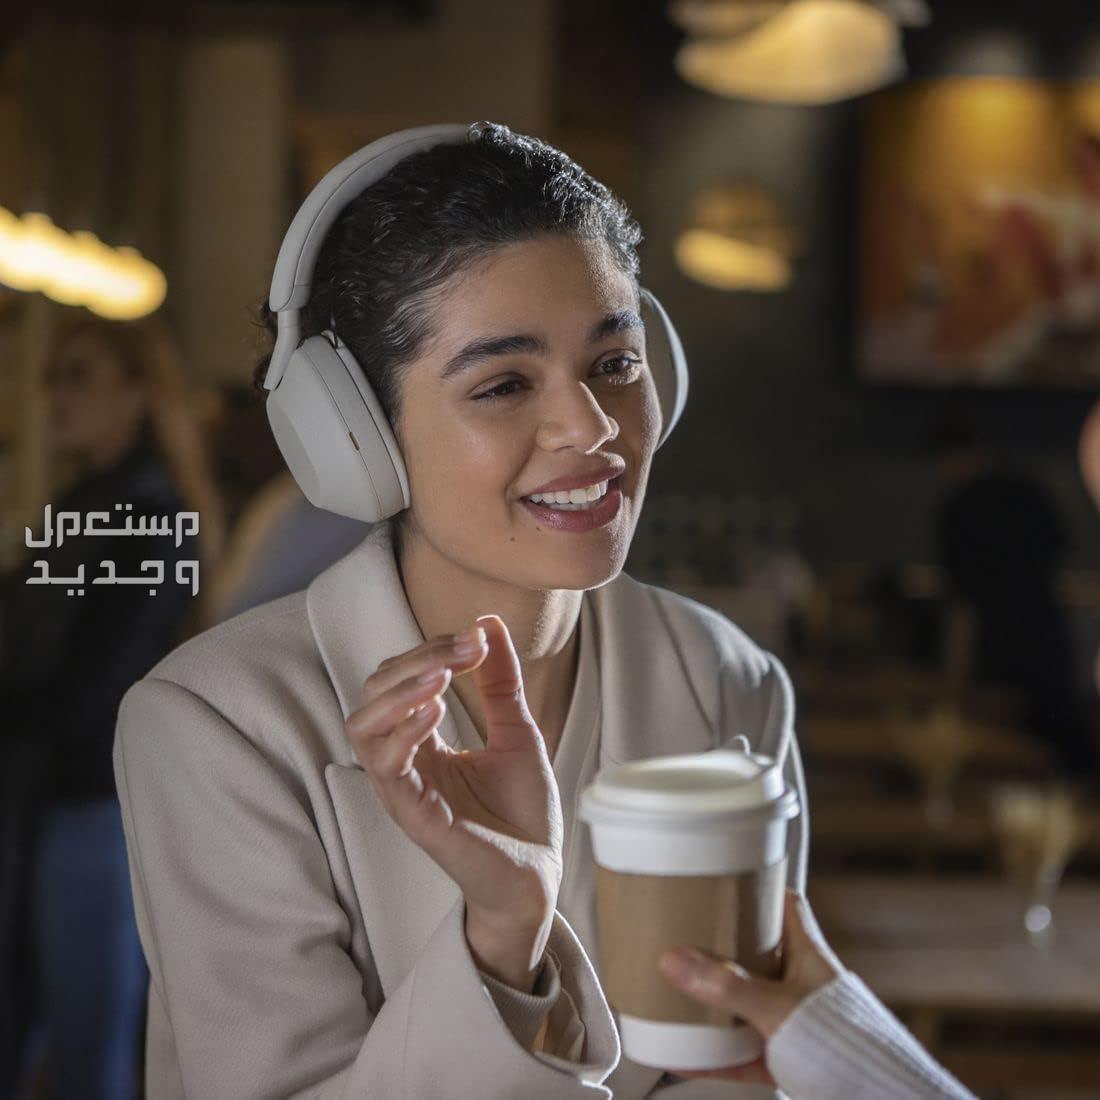 سماعة سوني 5 بتقنية إلغاء الضوضاء المطوّرة  السعر والمميزات الفائقة في الأردن سماعة سوني 5 جودة مكالمات رائدة